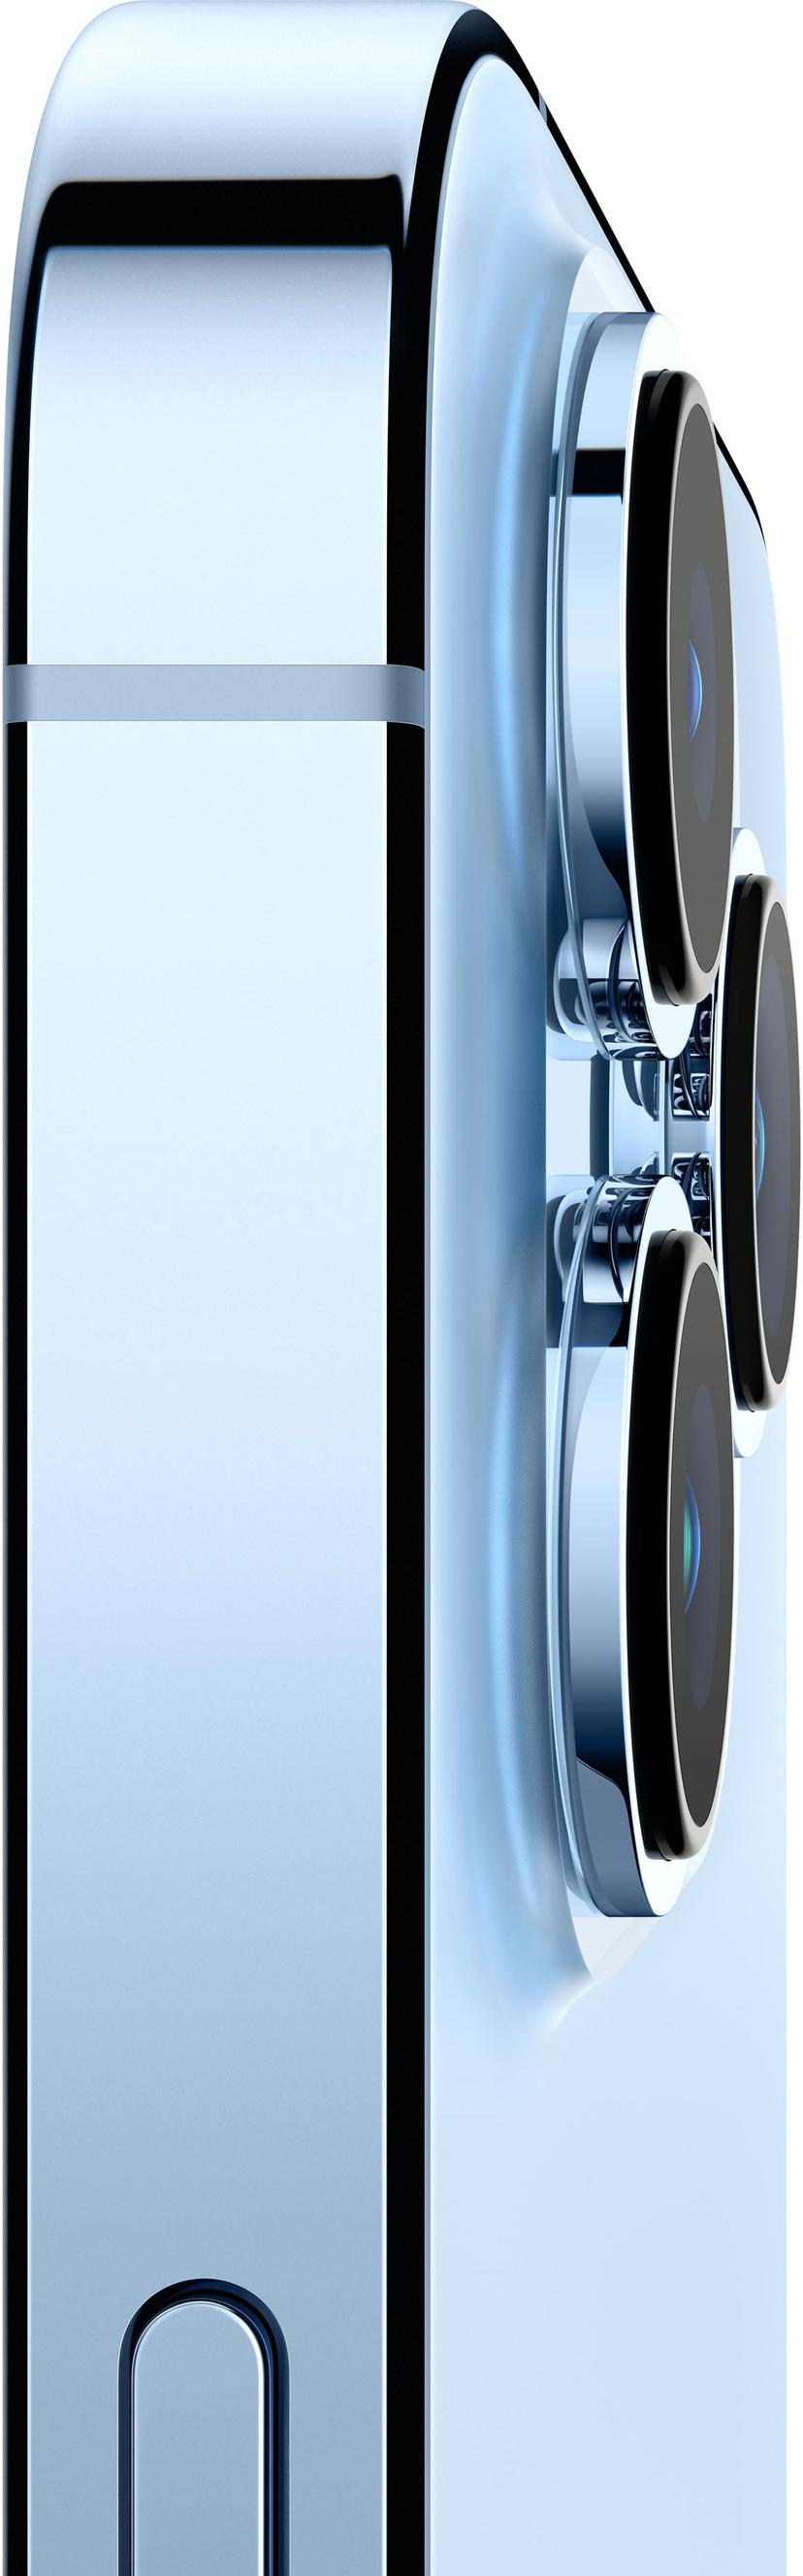 Apple iPhone 13 Pro Max 128GB Sierrablå